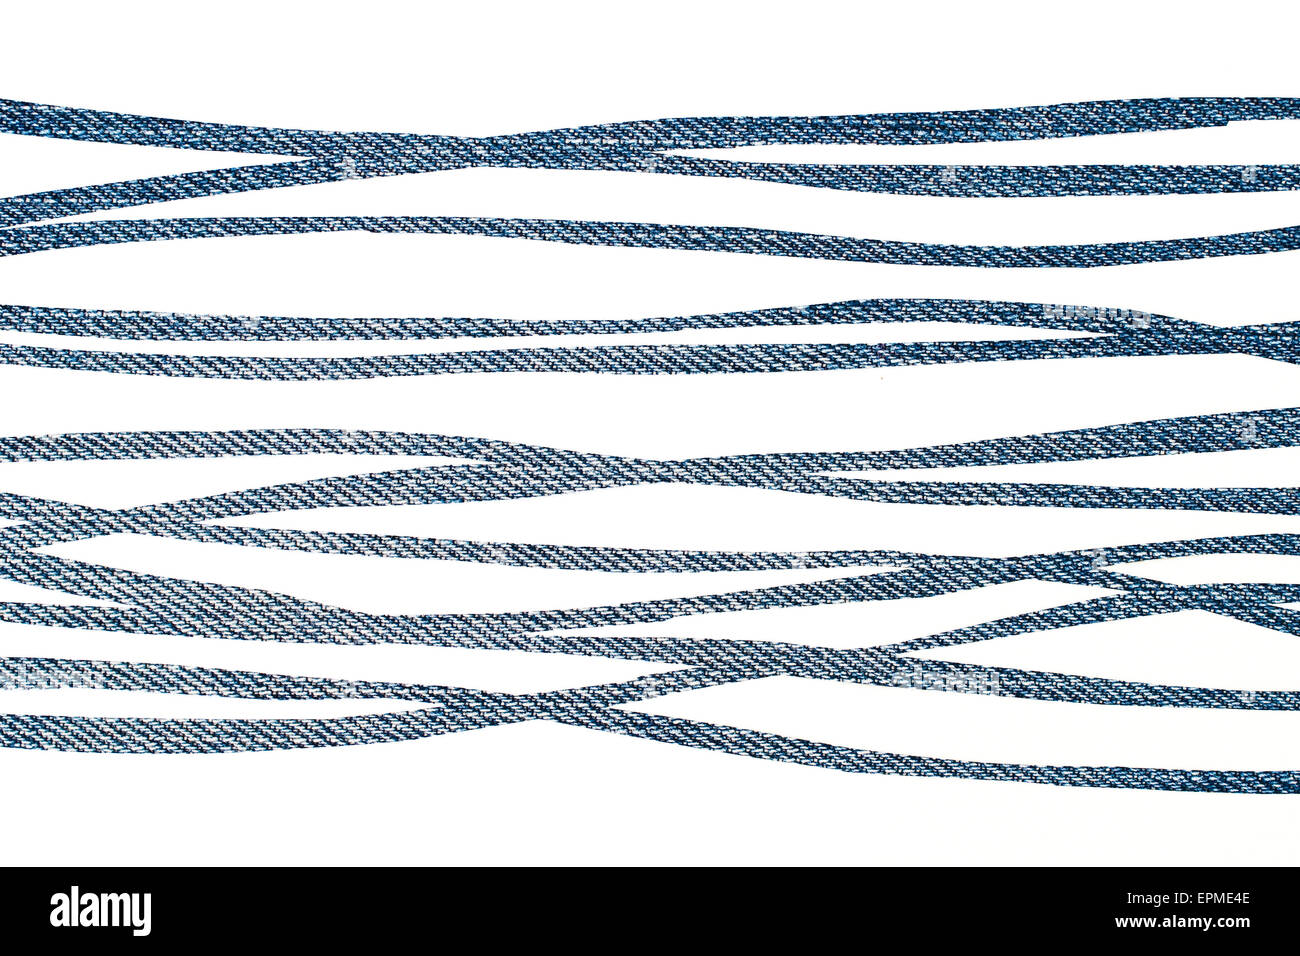 Zebrastreifen auf Jeans Textur - Grafik Hintergrund Stockfoto